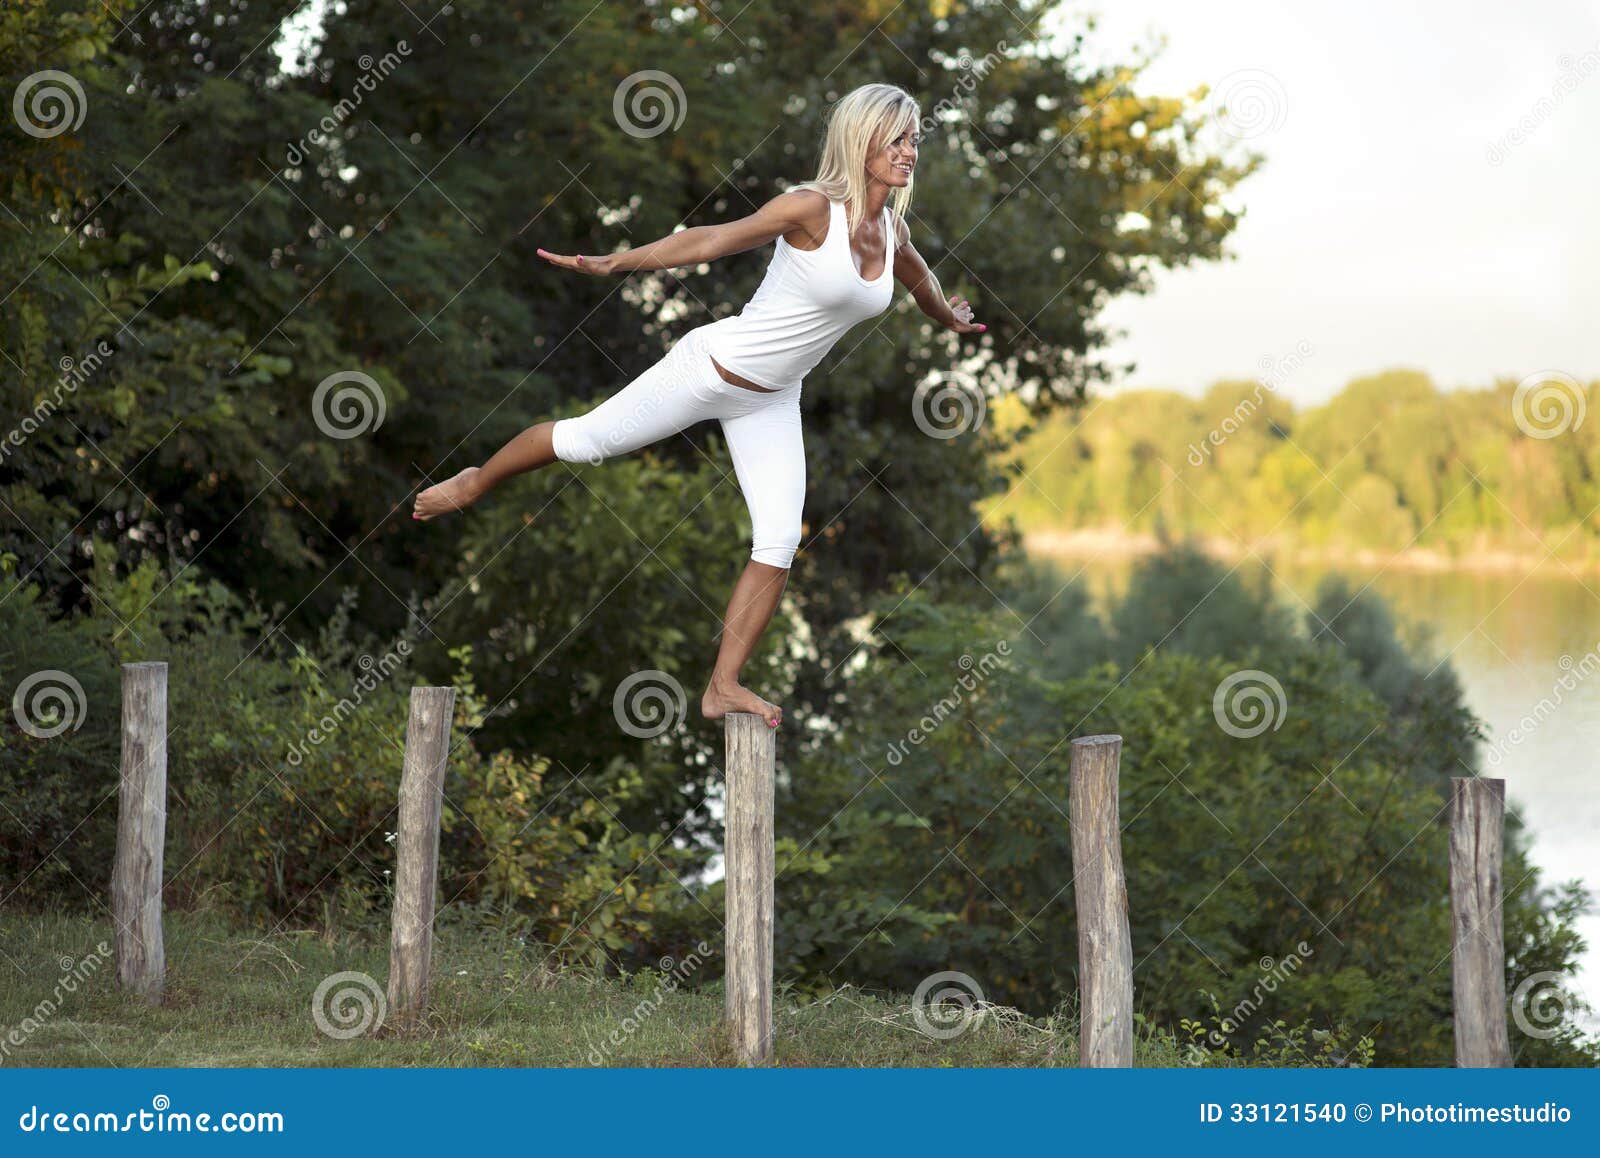 woman balancing on fence post